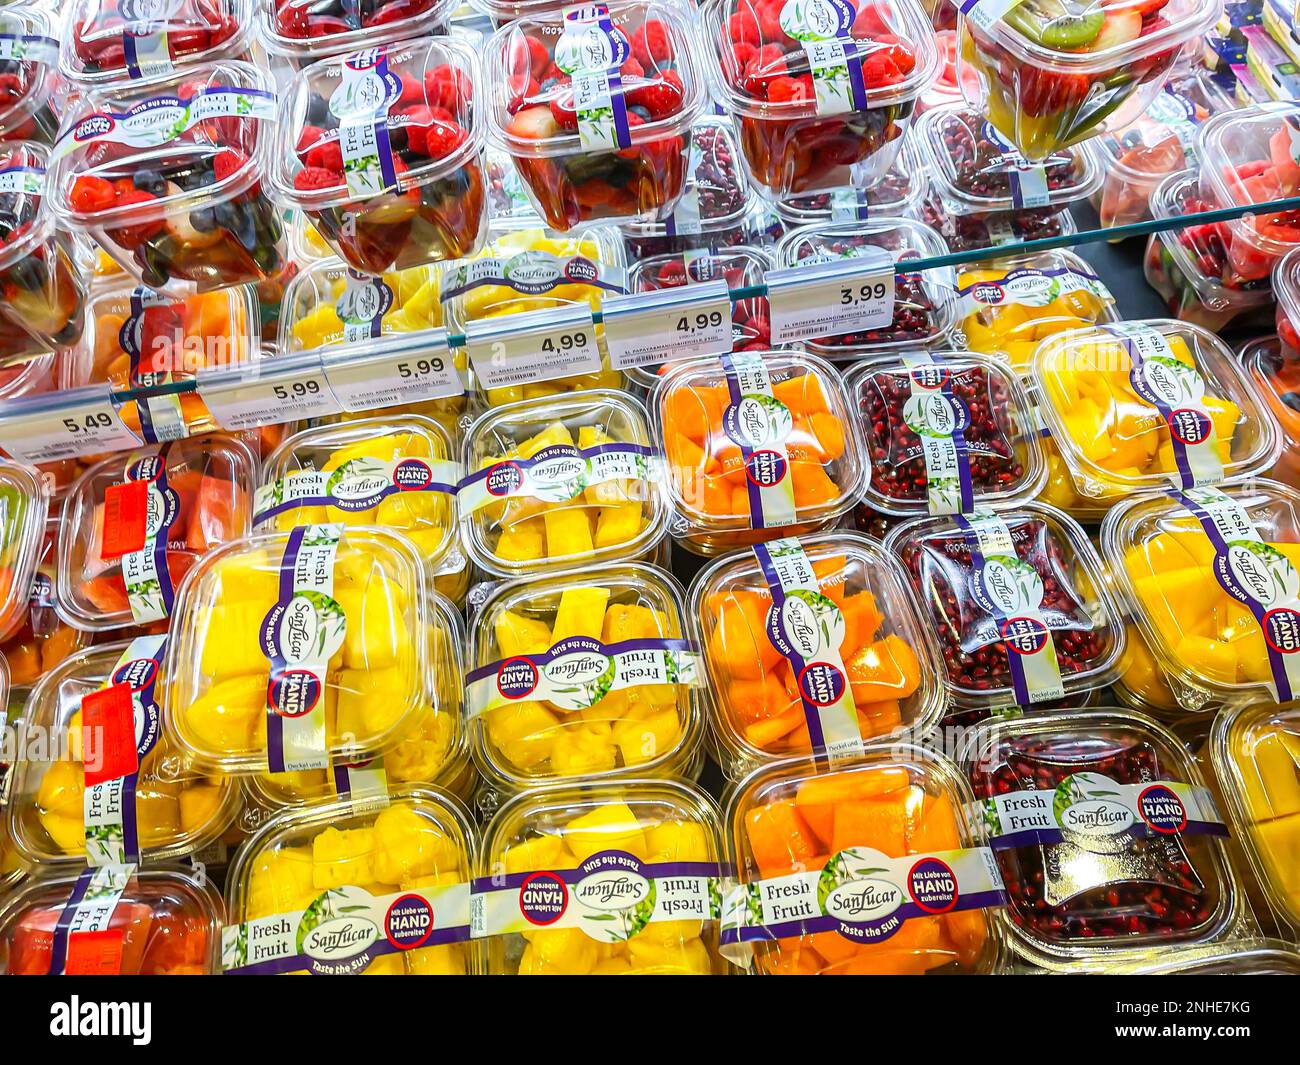 Frutta imballata in plastica, rifiuti di imballaggio, scaffale per supermercati, Stoccarda, Baden-Wuerttemberg, Germania Foto Stock